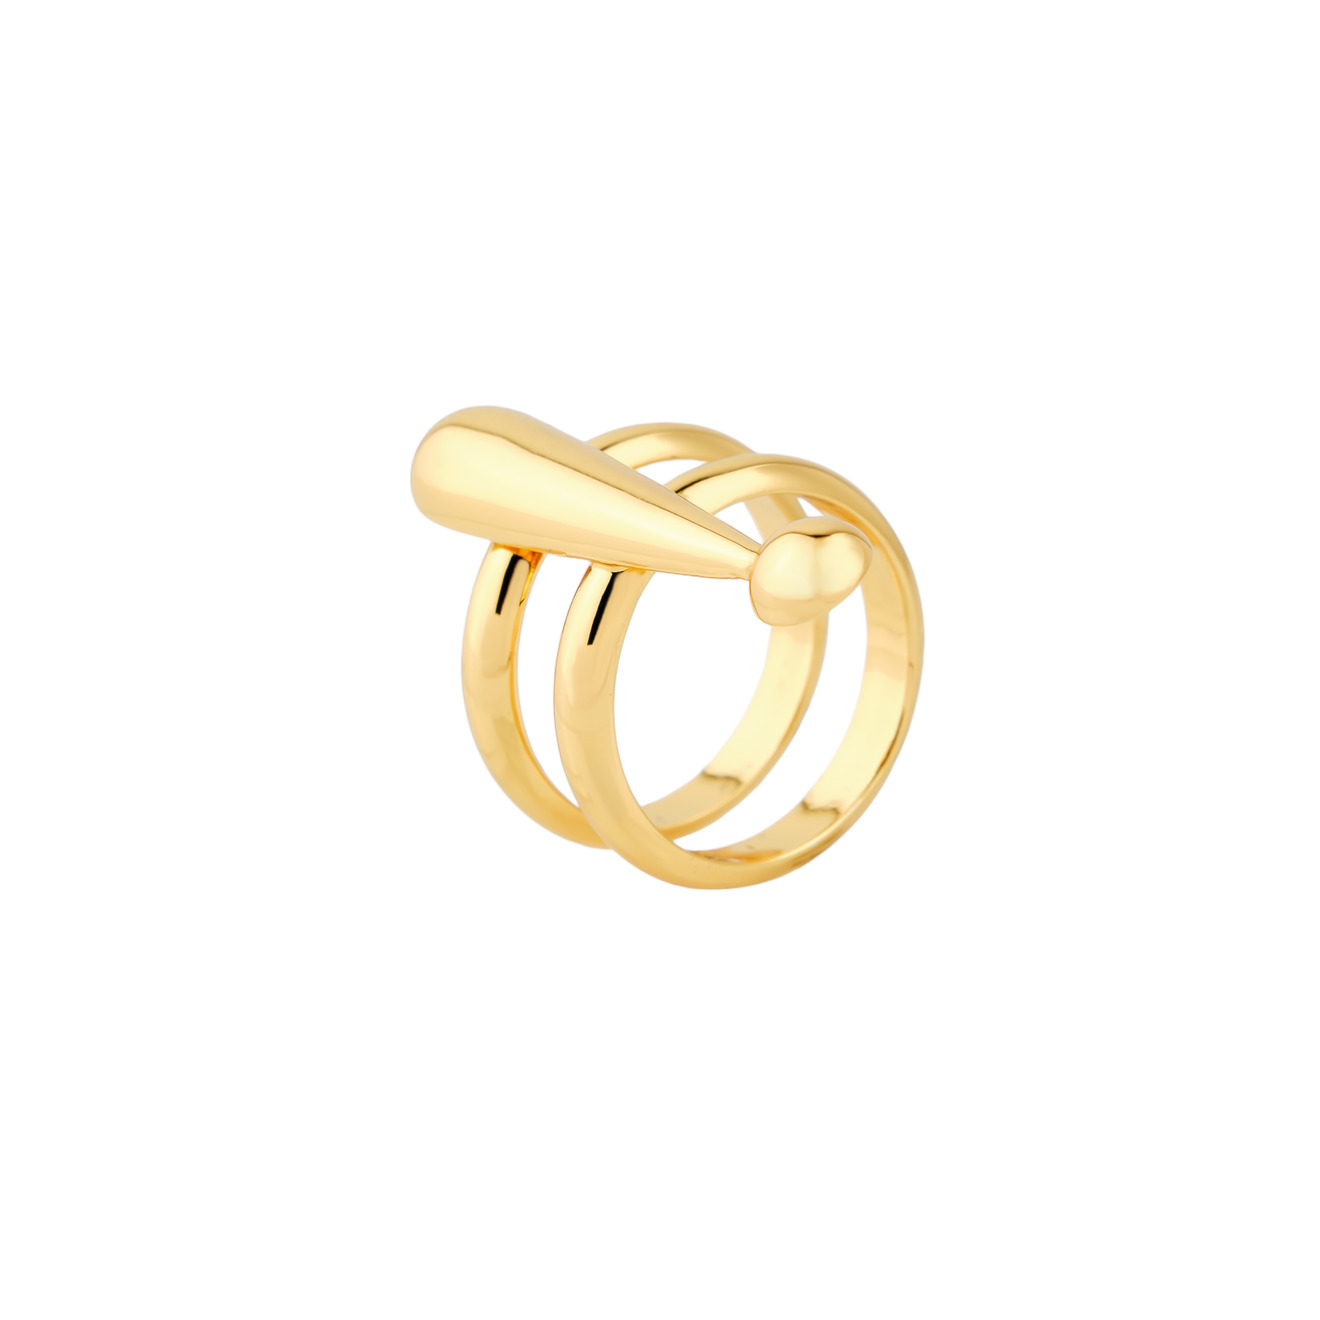 Moschino Двойное позолоченное кольцо с восклицательным знаком цена и фото